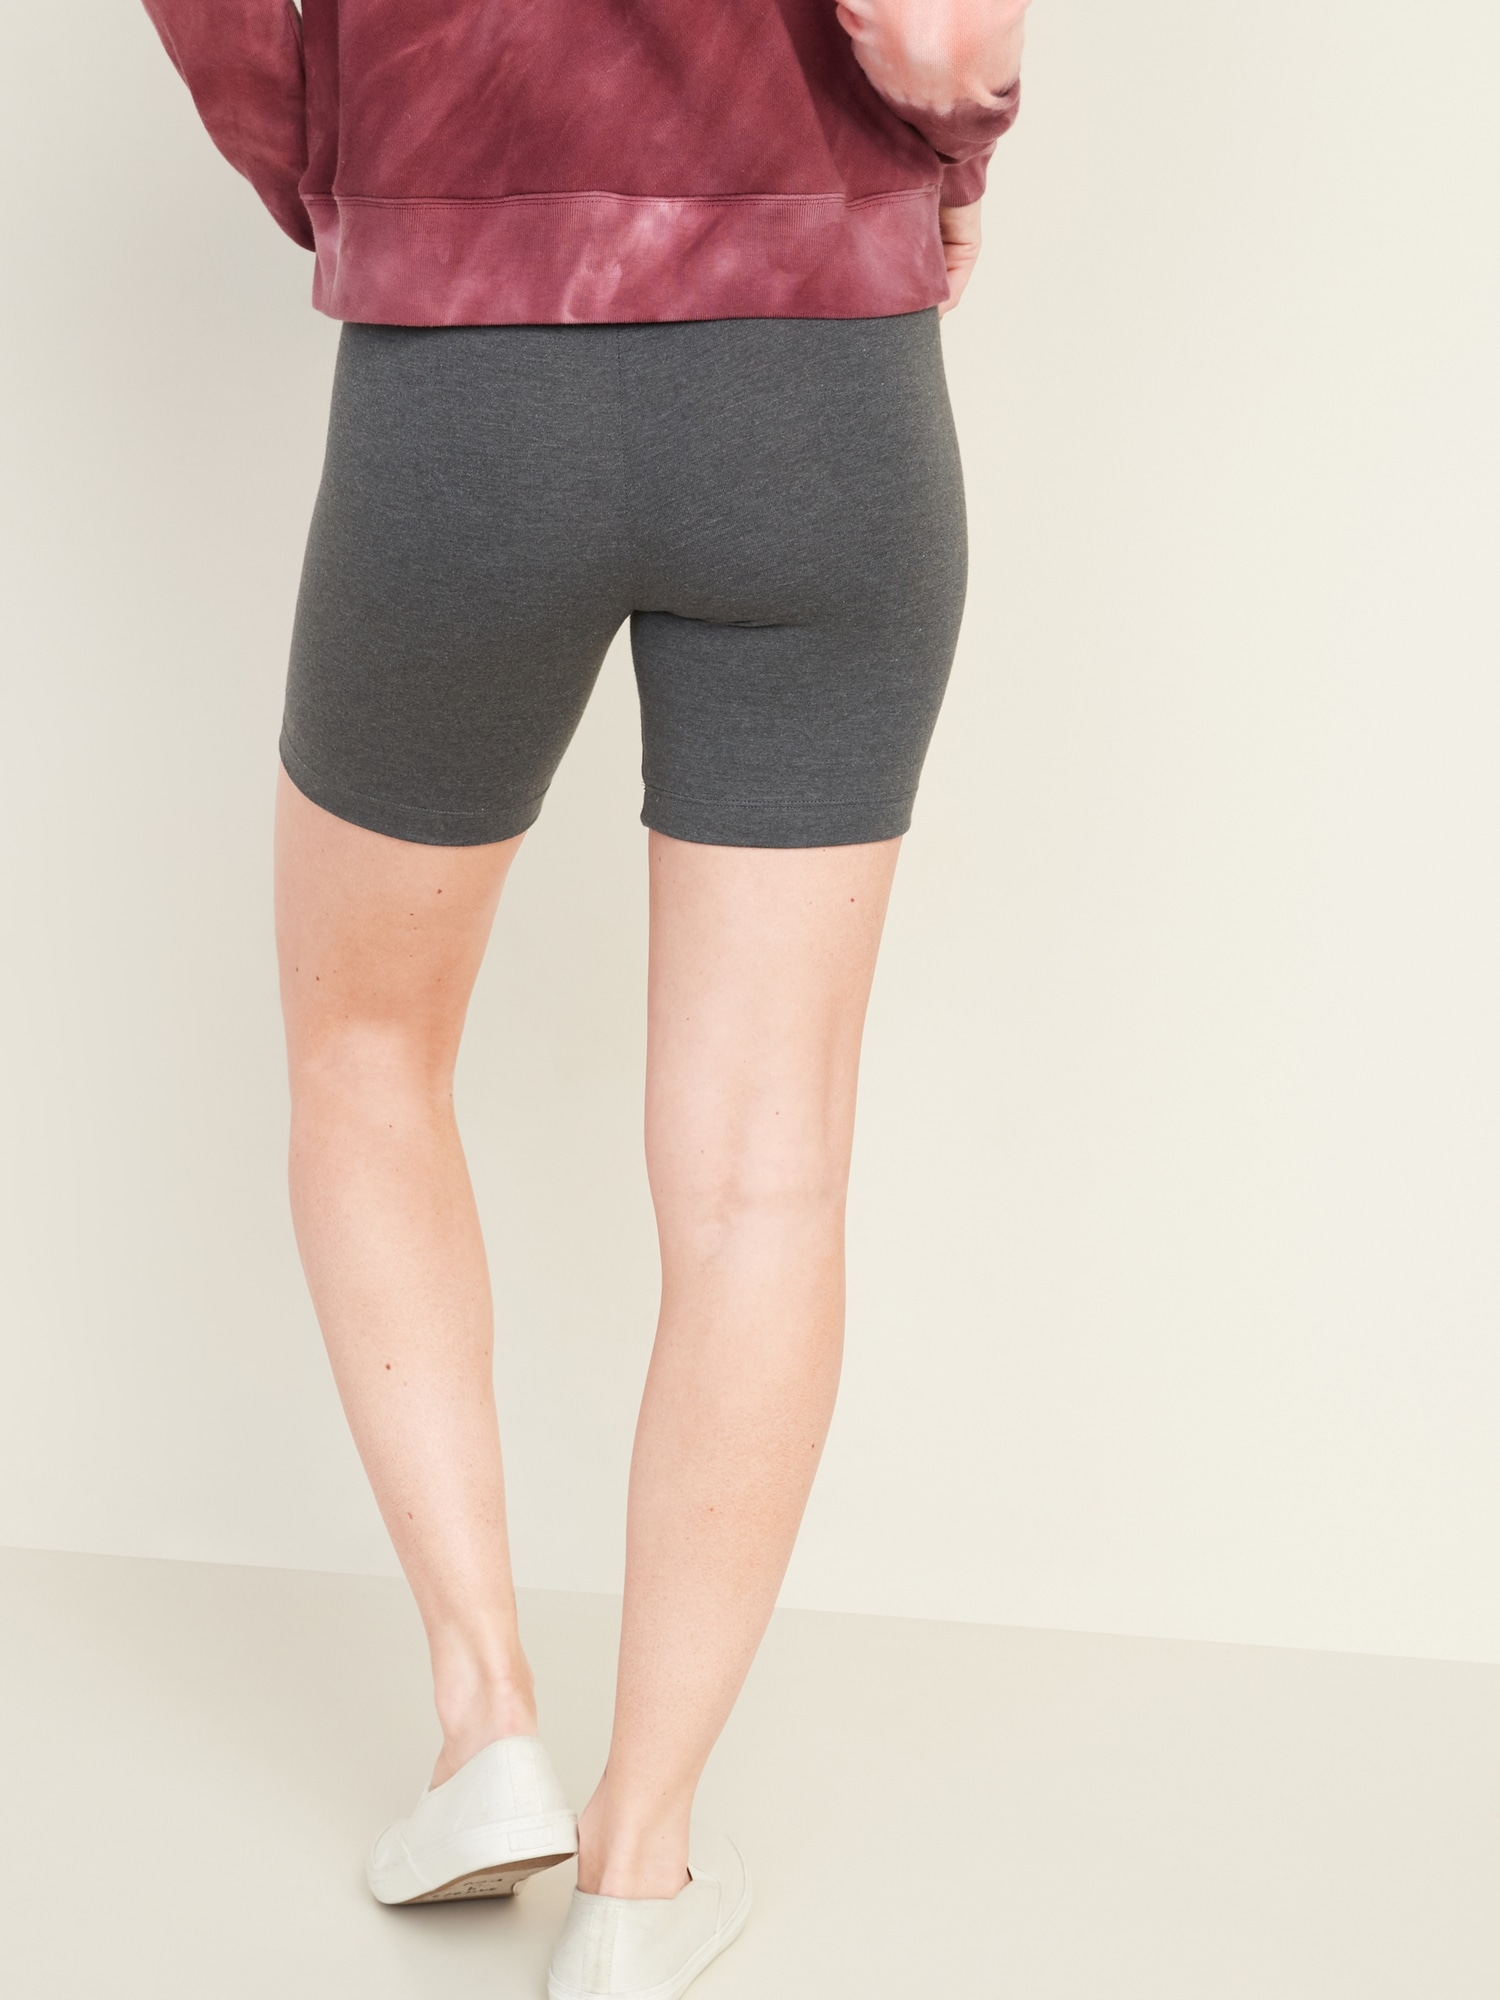 Biker Shorts for Women -- 7-inch inseam 